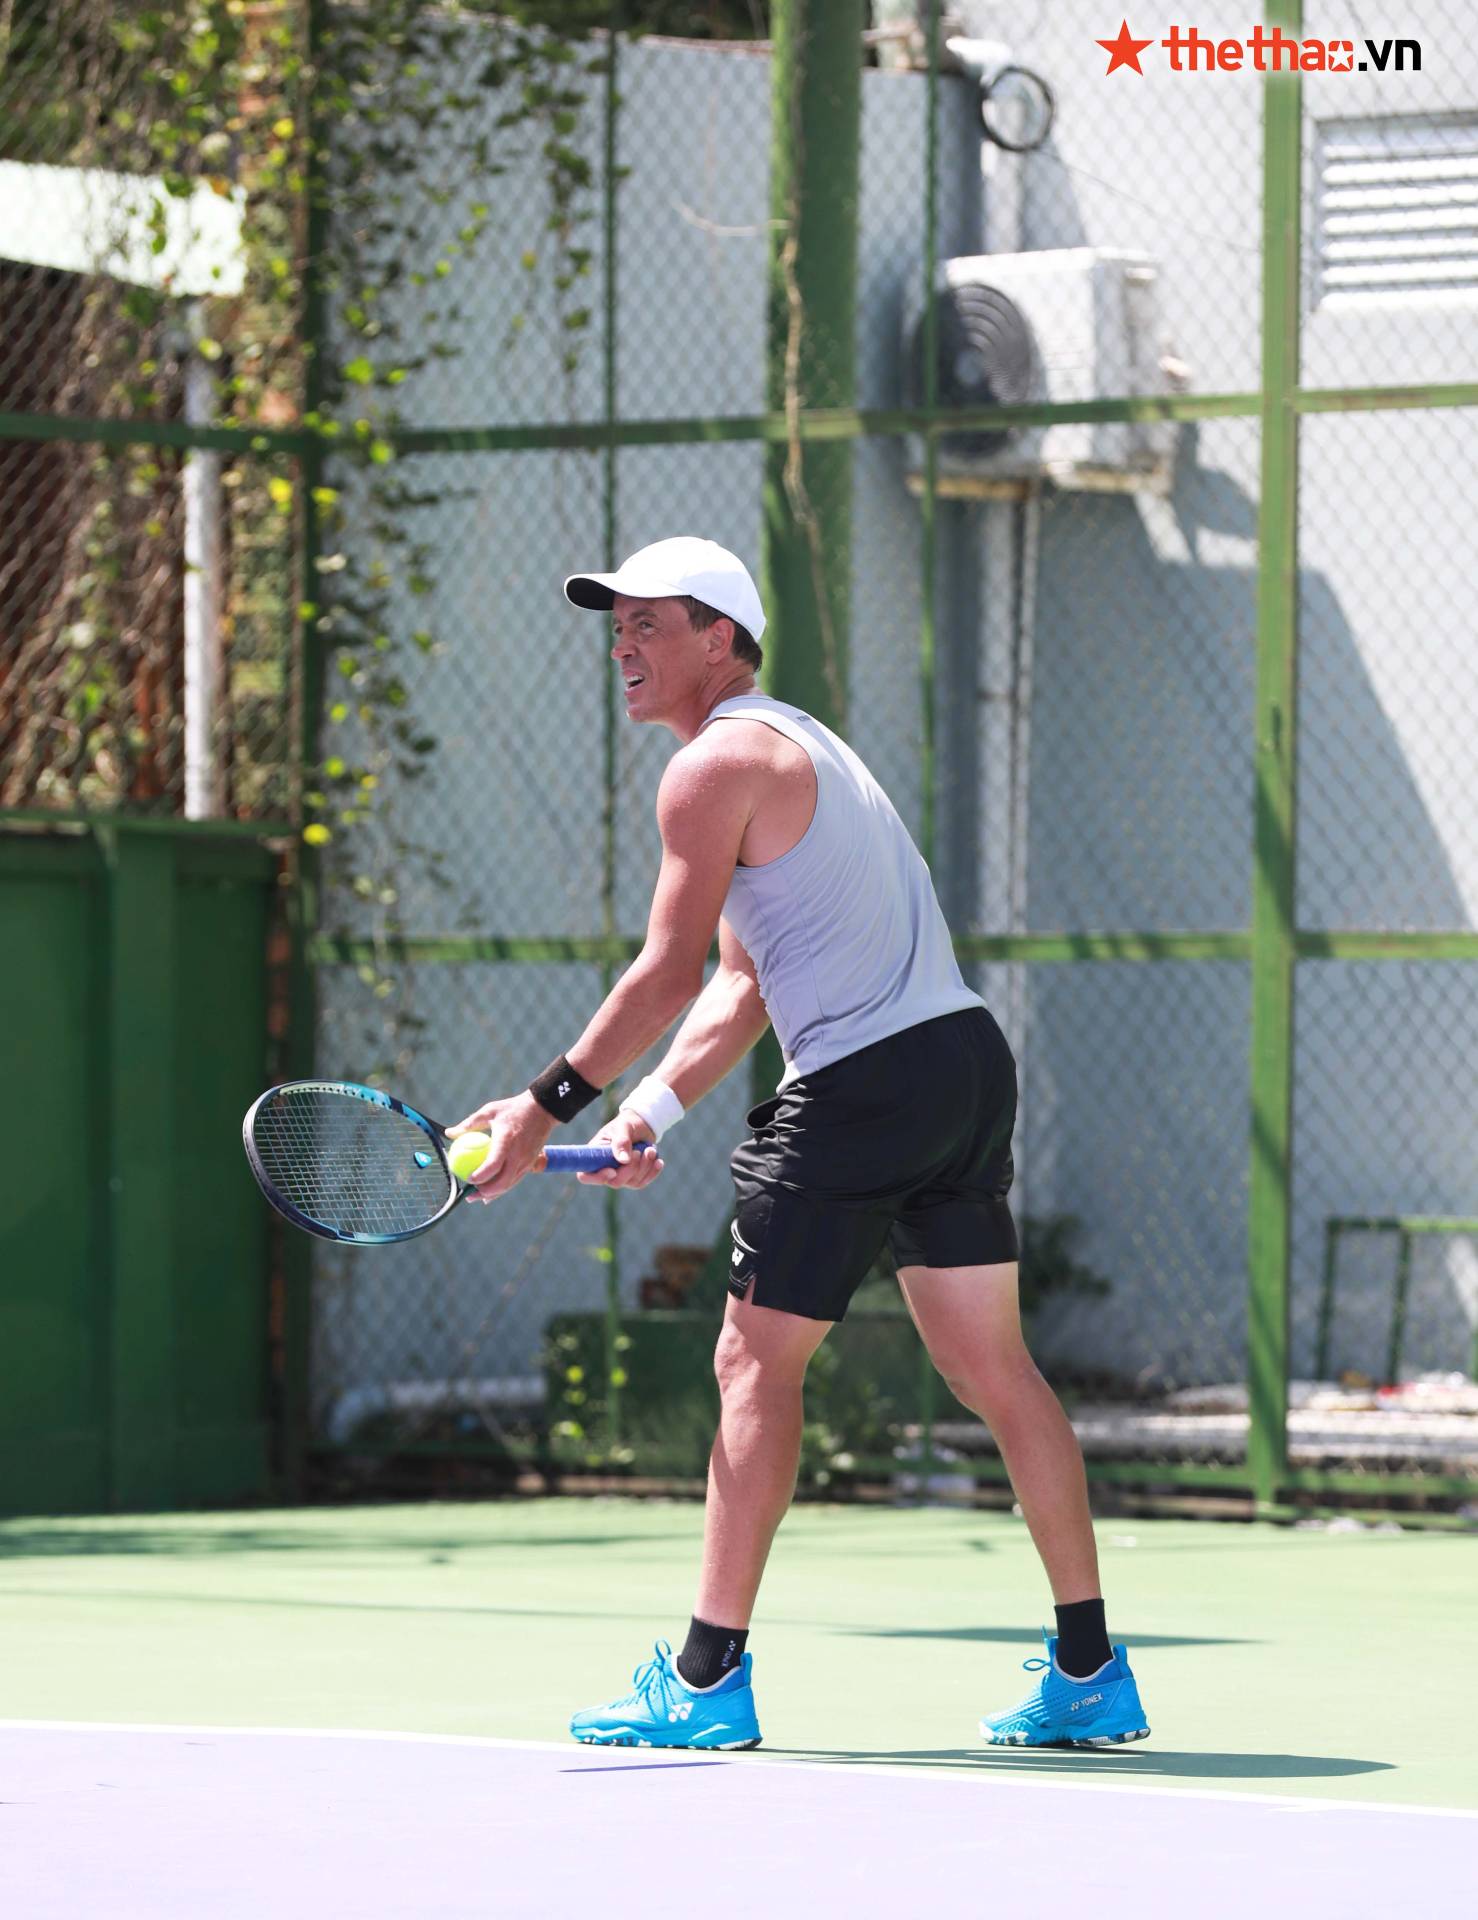 M25 Tây Ninh: Tay vợt New Zealand tập giữa trưa nắng, khoe cơ bắp cuồn cuộn ở tuổi 35 - Ảnh 9